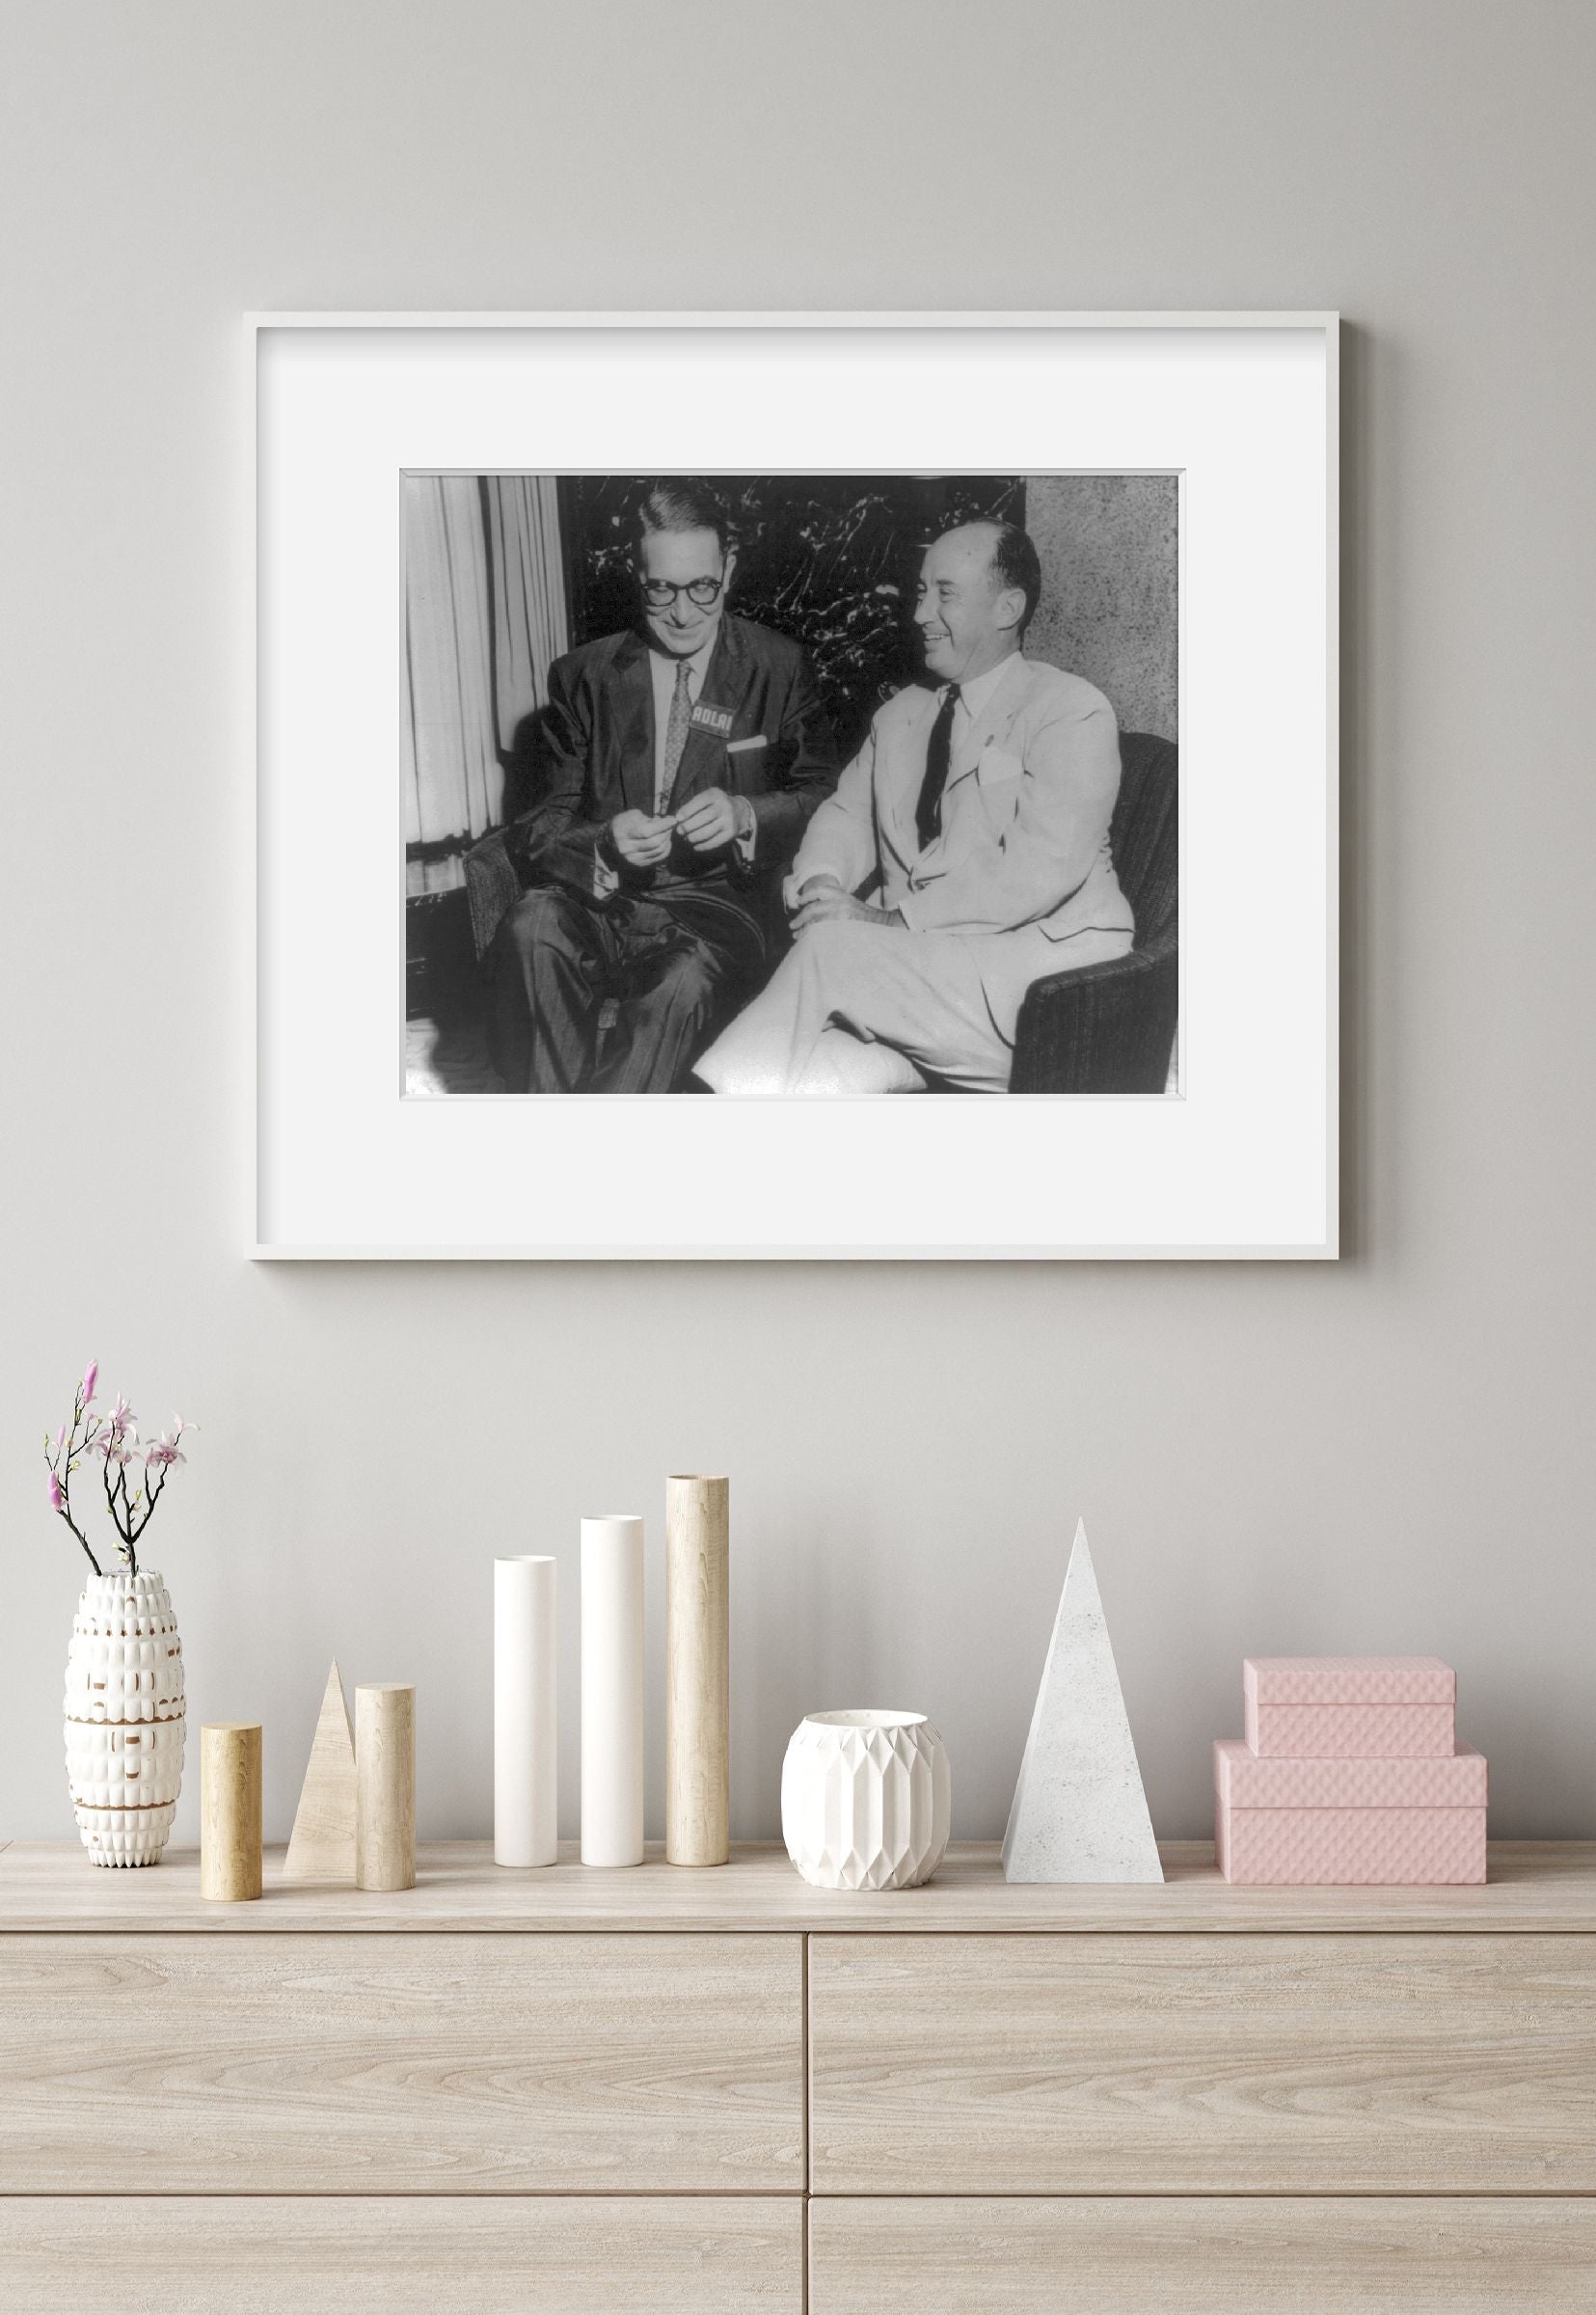 Photo: Adlai Ewing Stevenson, 1900-1965, politician, with Estes Kefauver, 1903-1963